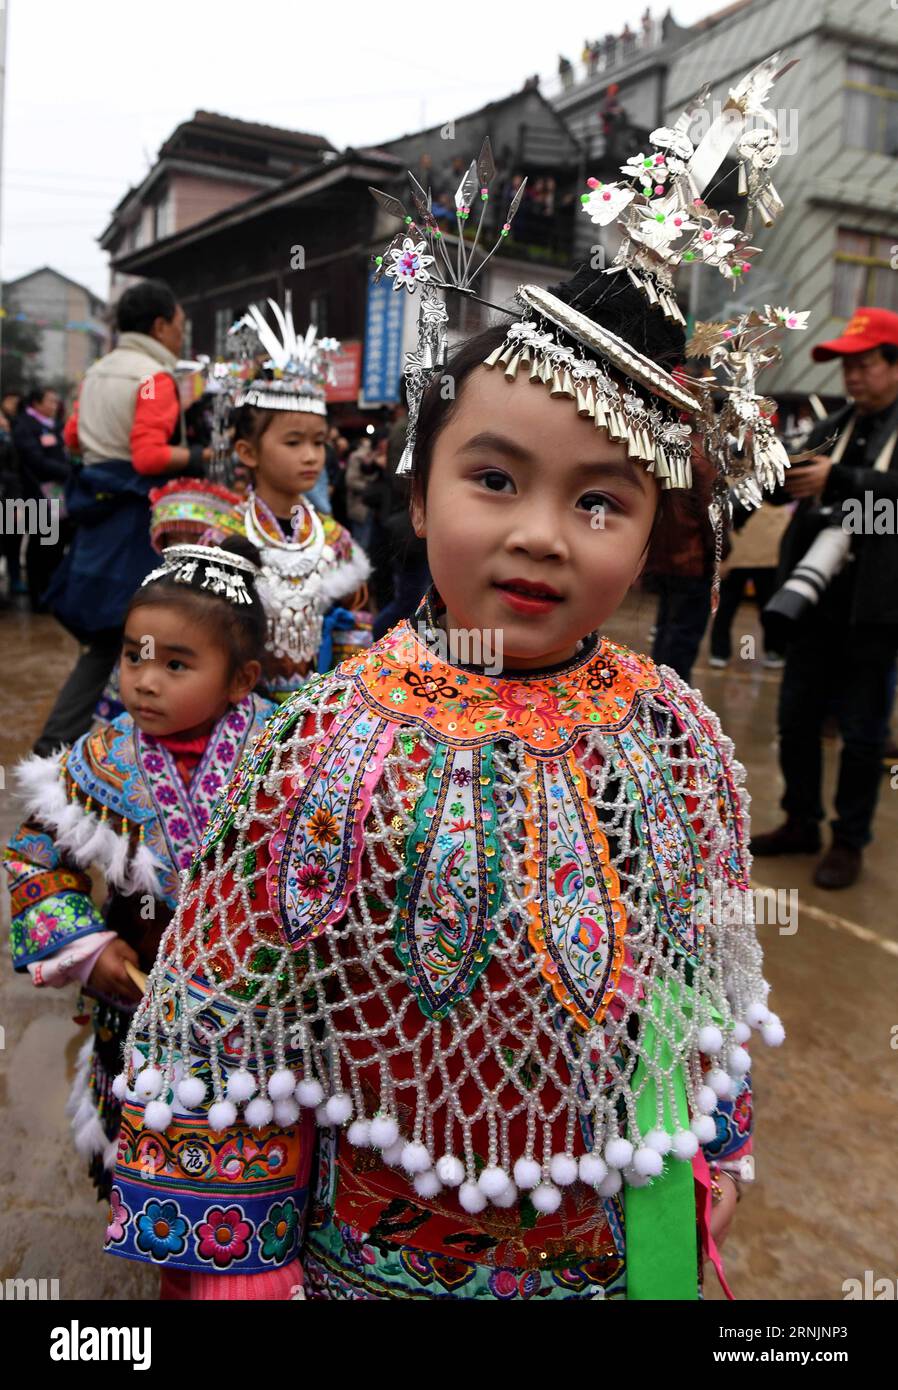 (170207) -- RONGSHUI, 7. Februar 2017 -- Kinder nehmen an einem Treffen Teil, um die Freundschaft zu stärken und das Frühlingsfest oder das chinesische Mondneujahr im Dorf Lindong im autonomen Kreis Rongshui Miao, südchinesische Autonome Region Guangxi Zhuang, 7. Februar 2017, zu feiern. ) (Lb) CHINA-GUANGXI-RONGSHUI-CHINESE LUNAR NEW YEAR (CN) ZhangxAilin PUBLICATIONxNOTxINxCHN Rongshui 7. Februar 2017 Kinder nehmen an einem Treffen Teil, um die Freundschaft zu stärken und das Frühlingsfest oder das chinesische Mondneujahr IM Dorf Lindong in Rongshui Miao Autonomous County South China S Guangxi ZH zu feiern Stockfoto